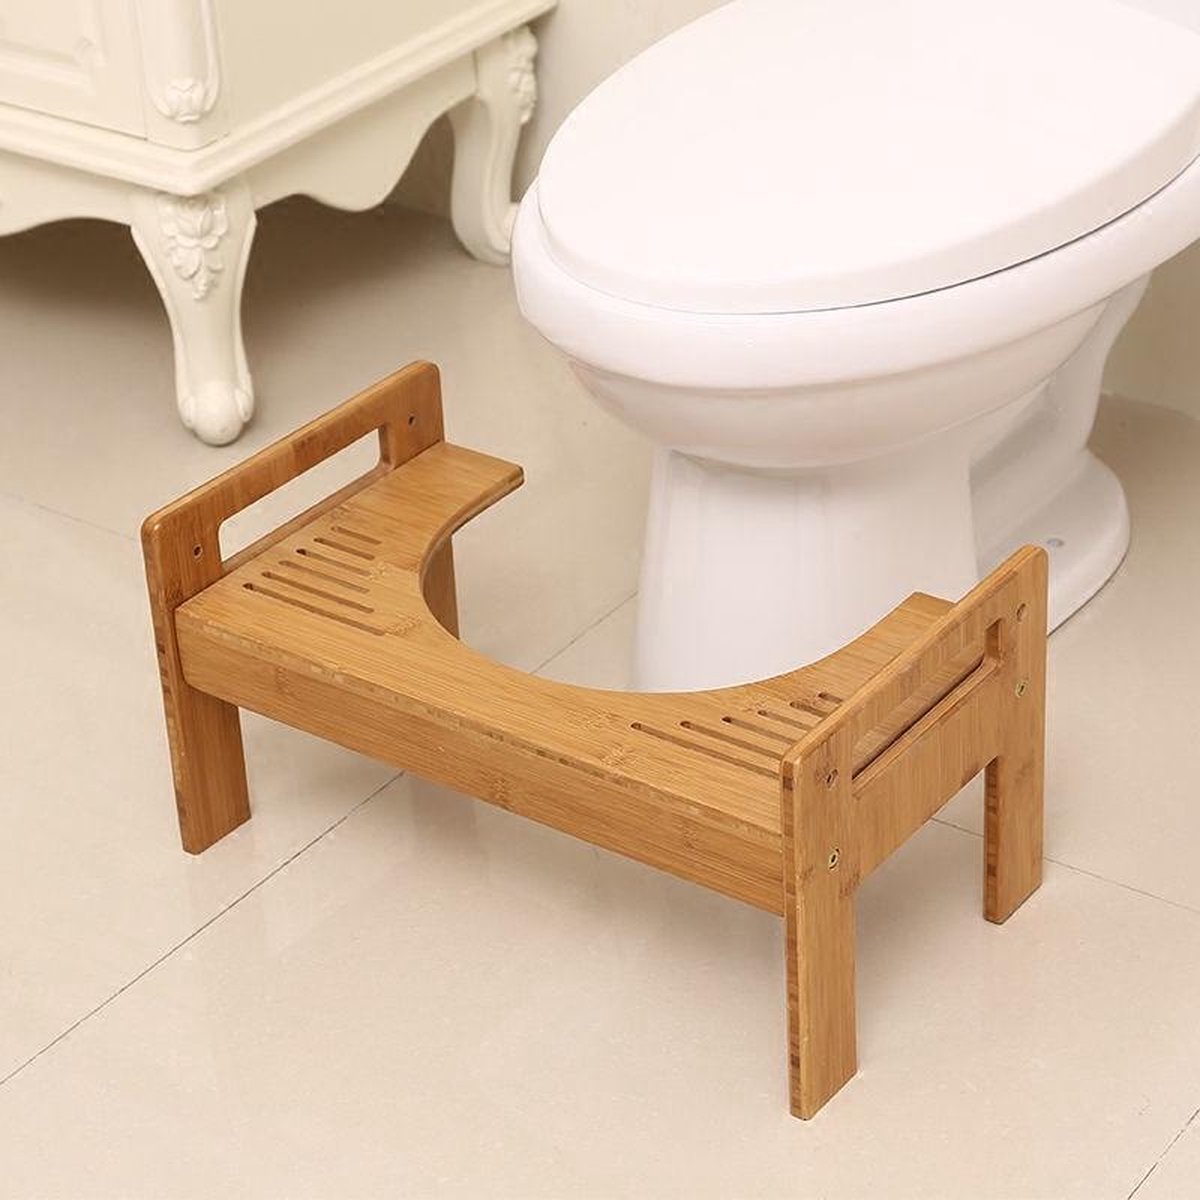 Decopatent® Bamboe Toiletkrukje - WC krukje - Juiste zithouding op het toilet - Betere stoelgang door natuurlijke hurkhouding - Merkloos